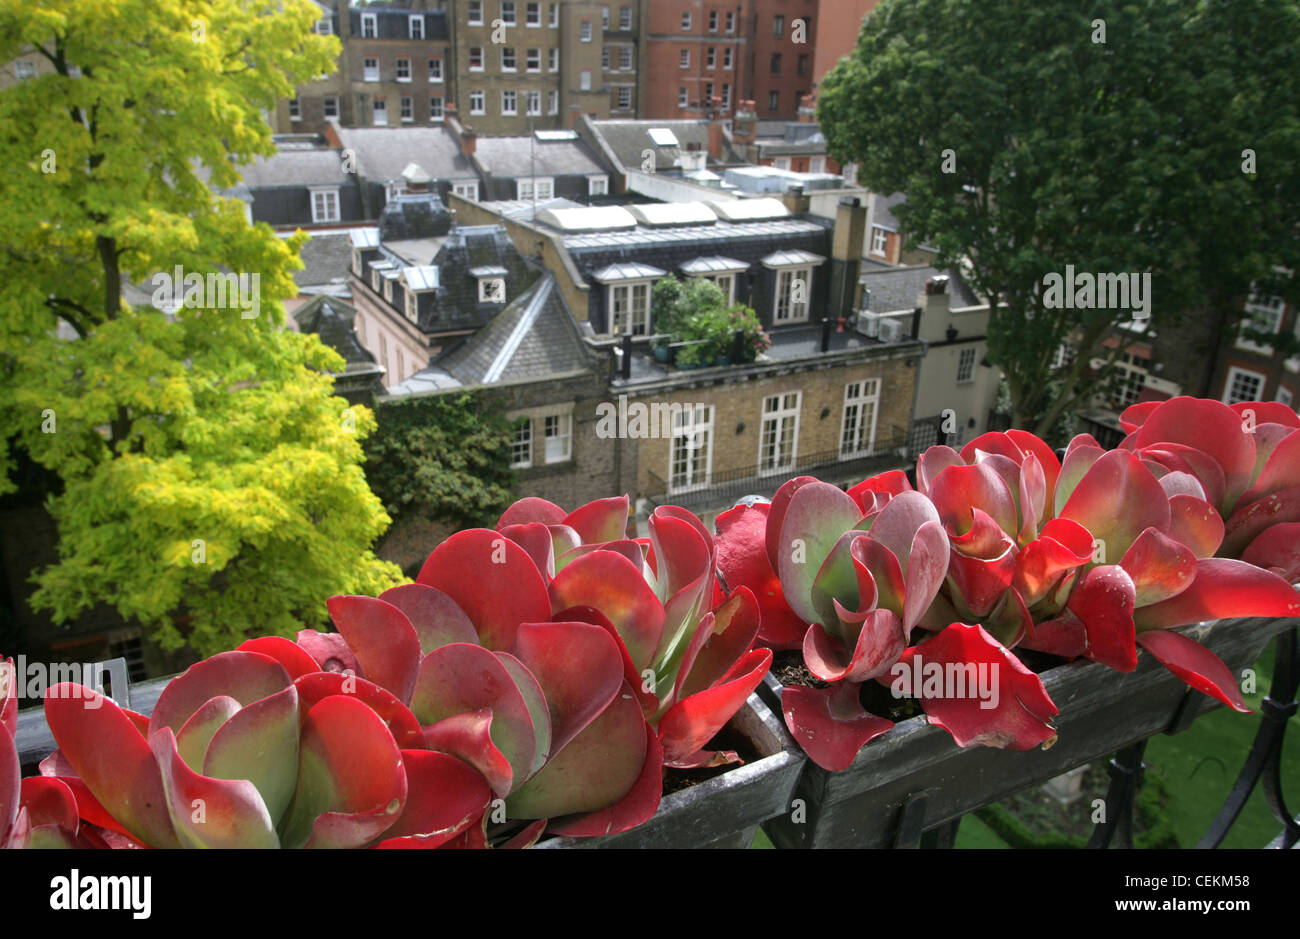 Maison géorgienne à Mayfair, Londres plante succulente avec des feuilles rouge et verte dans la fenêtre de dialogue Maisons en arrière-plan Banque D'Images